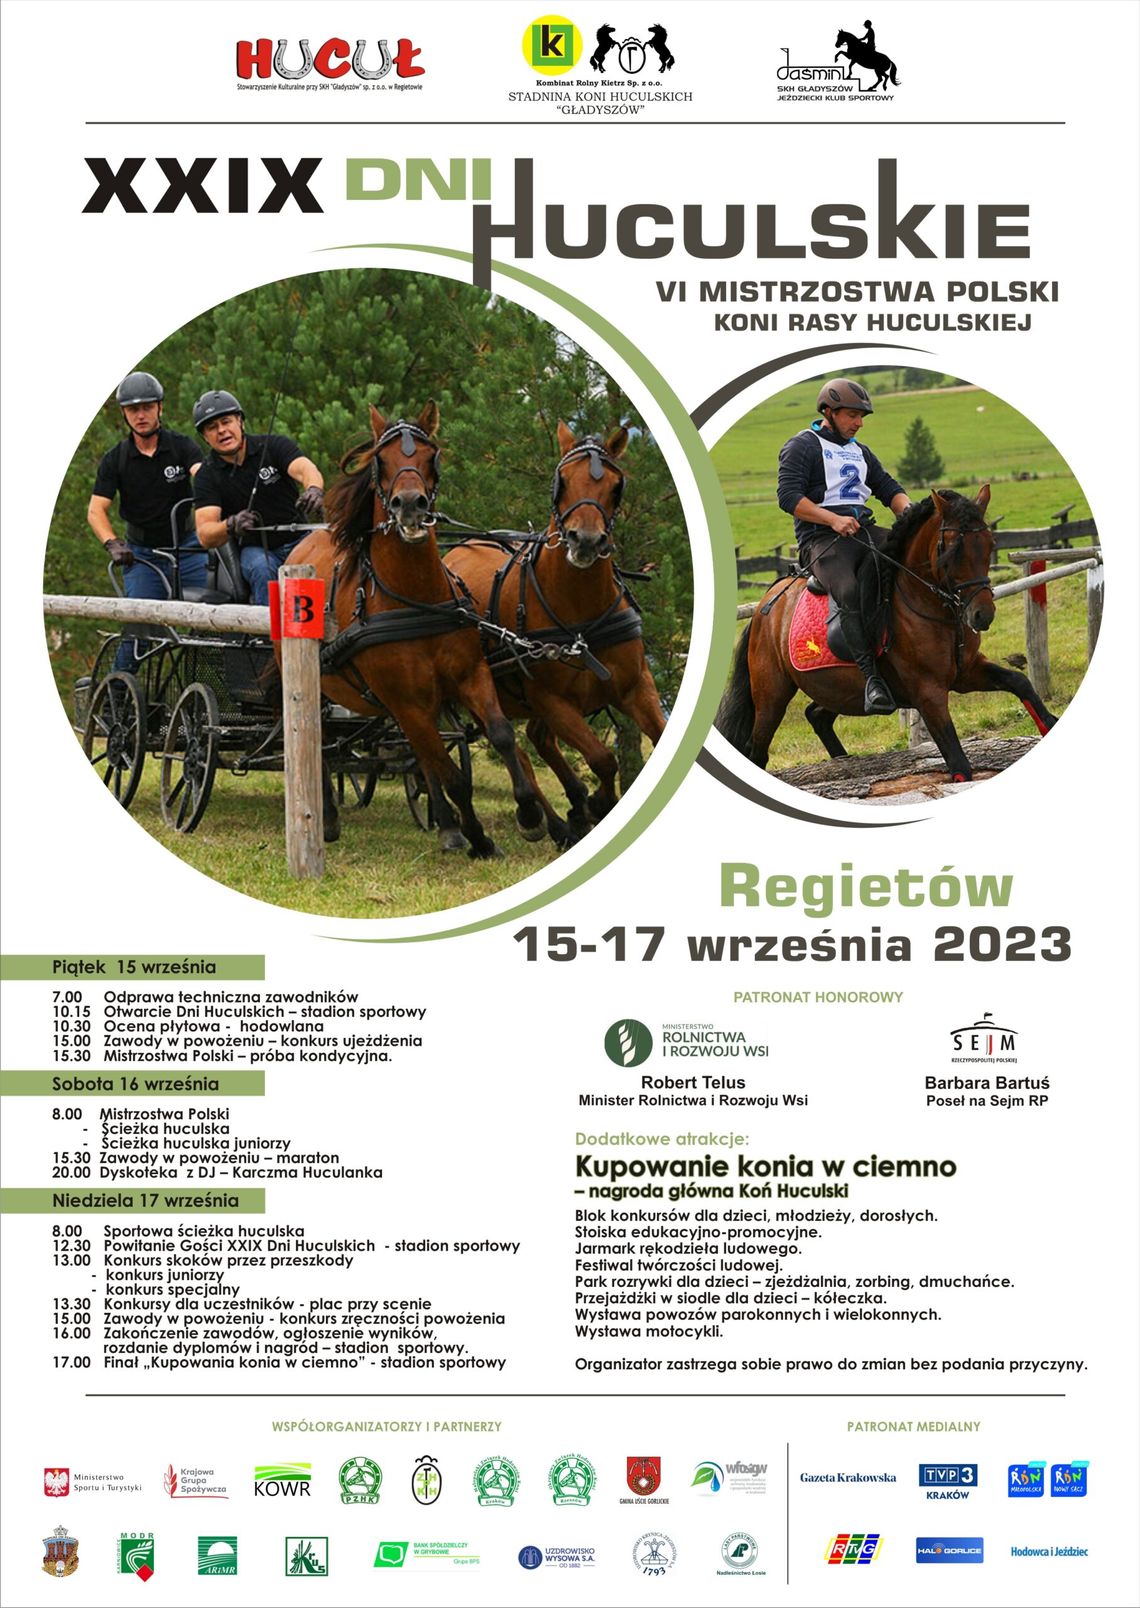 XXIX DNI HUCULSKIE 2023 i VI Mistrzostwa Polski Koni Rasy Huculskiej | halogorlice.info